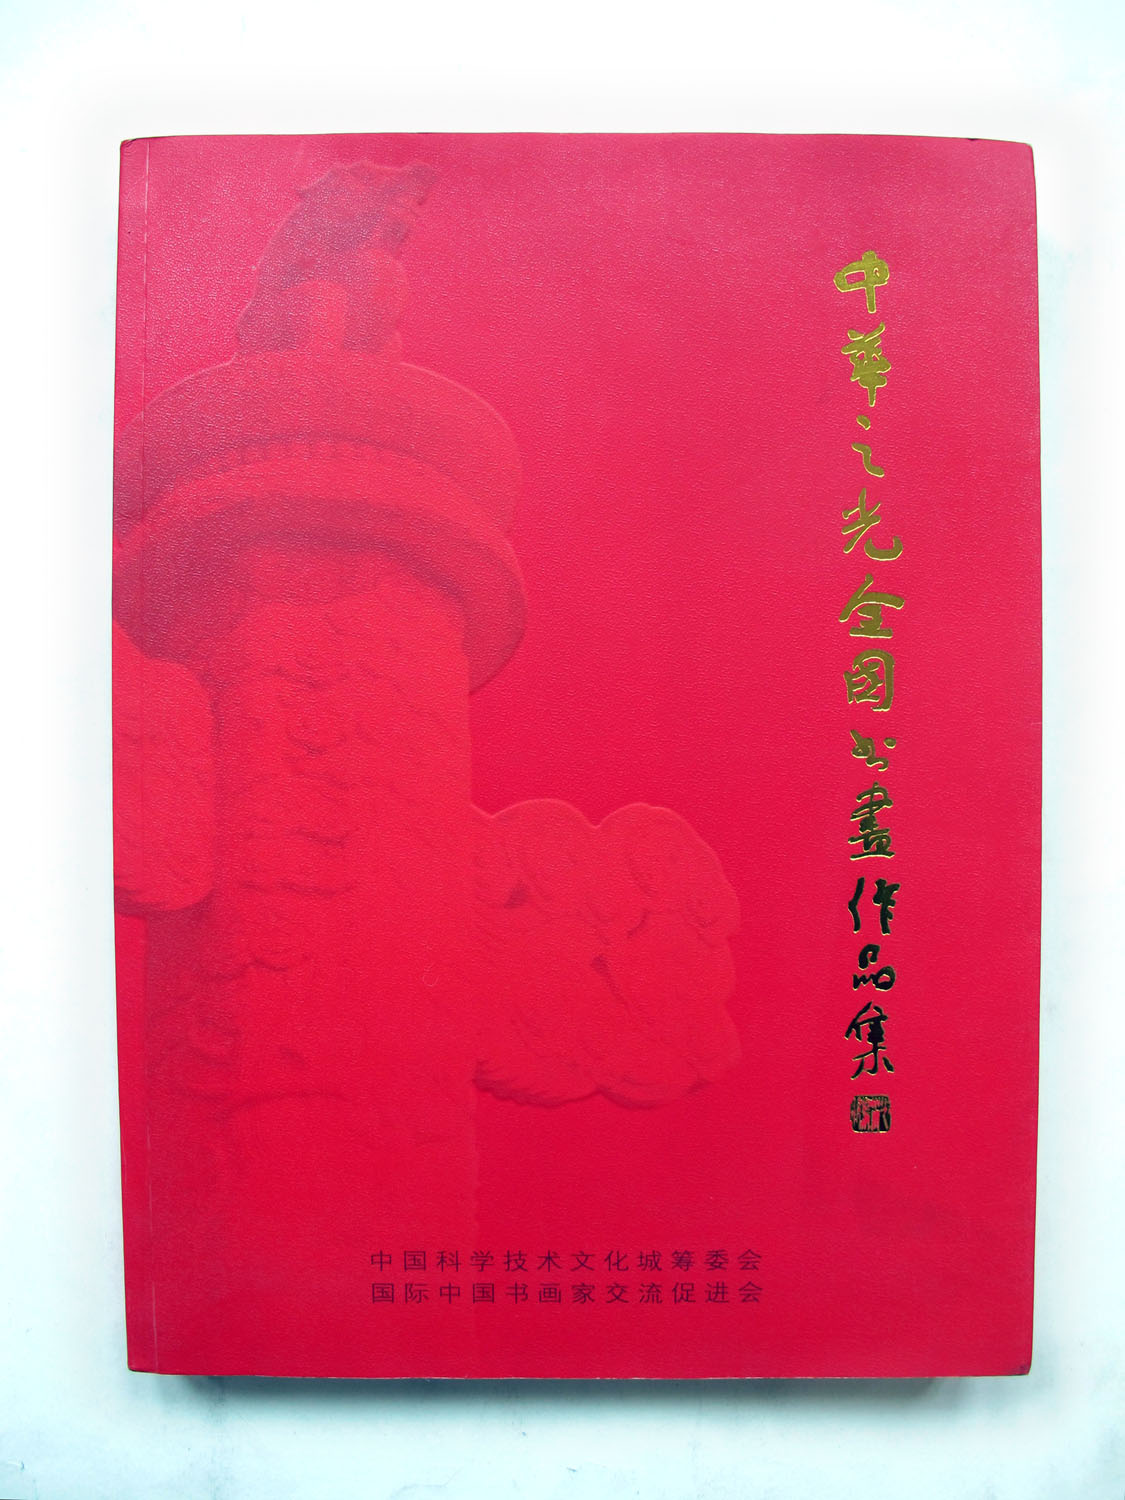 2009年11月中华之光全国书画作品集 国际中国书画家交流促进会